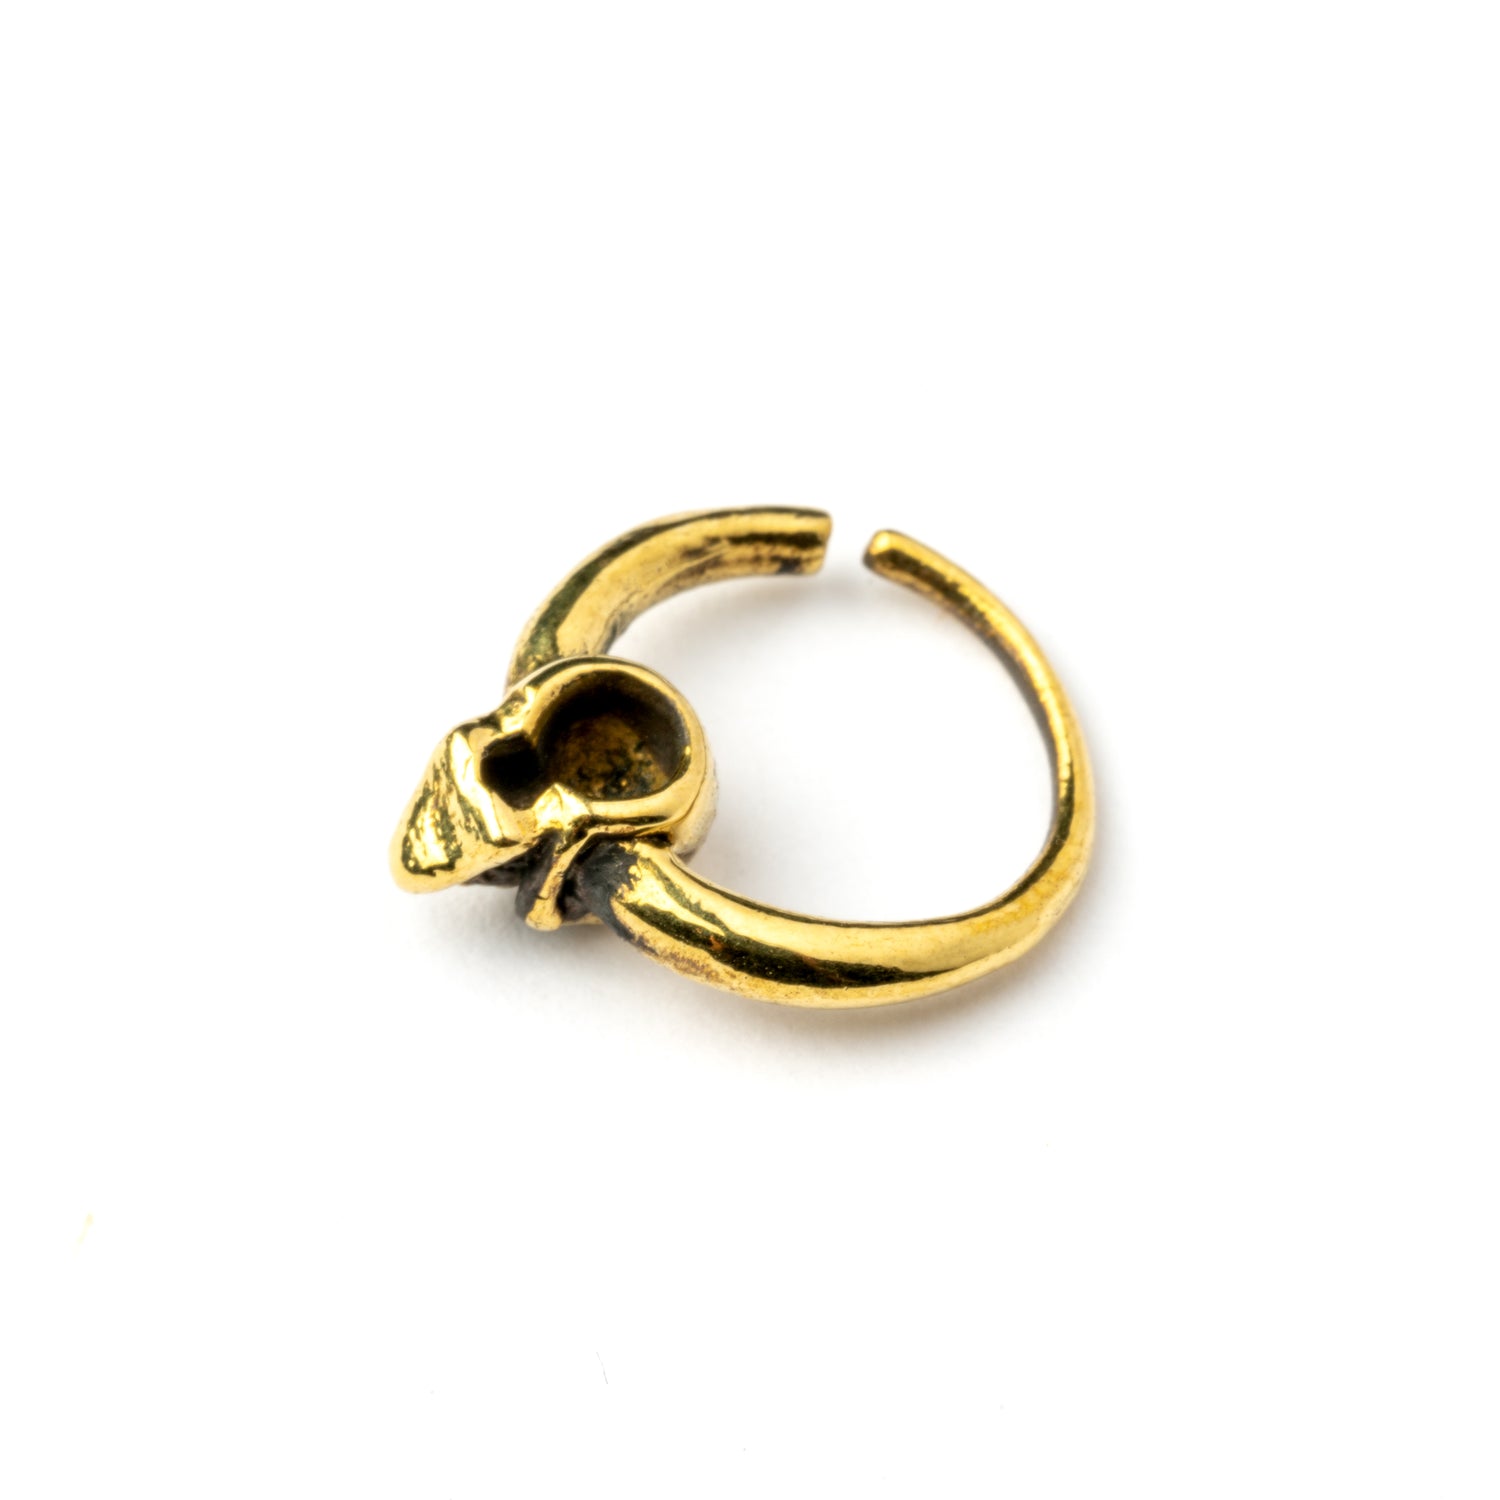 Pirate golden brass skull septum ring back view